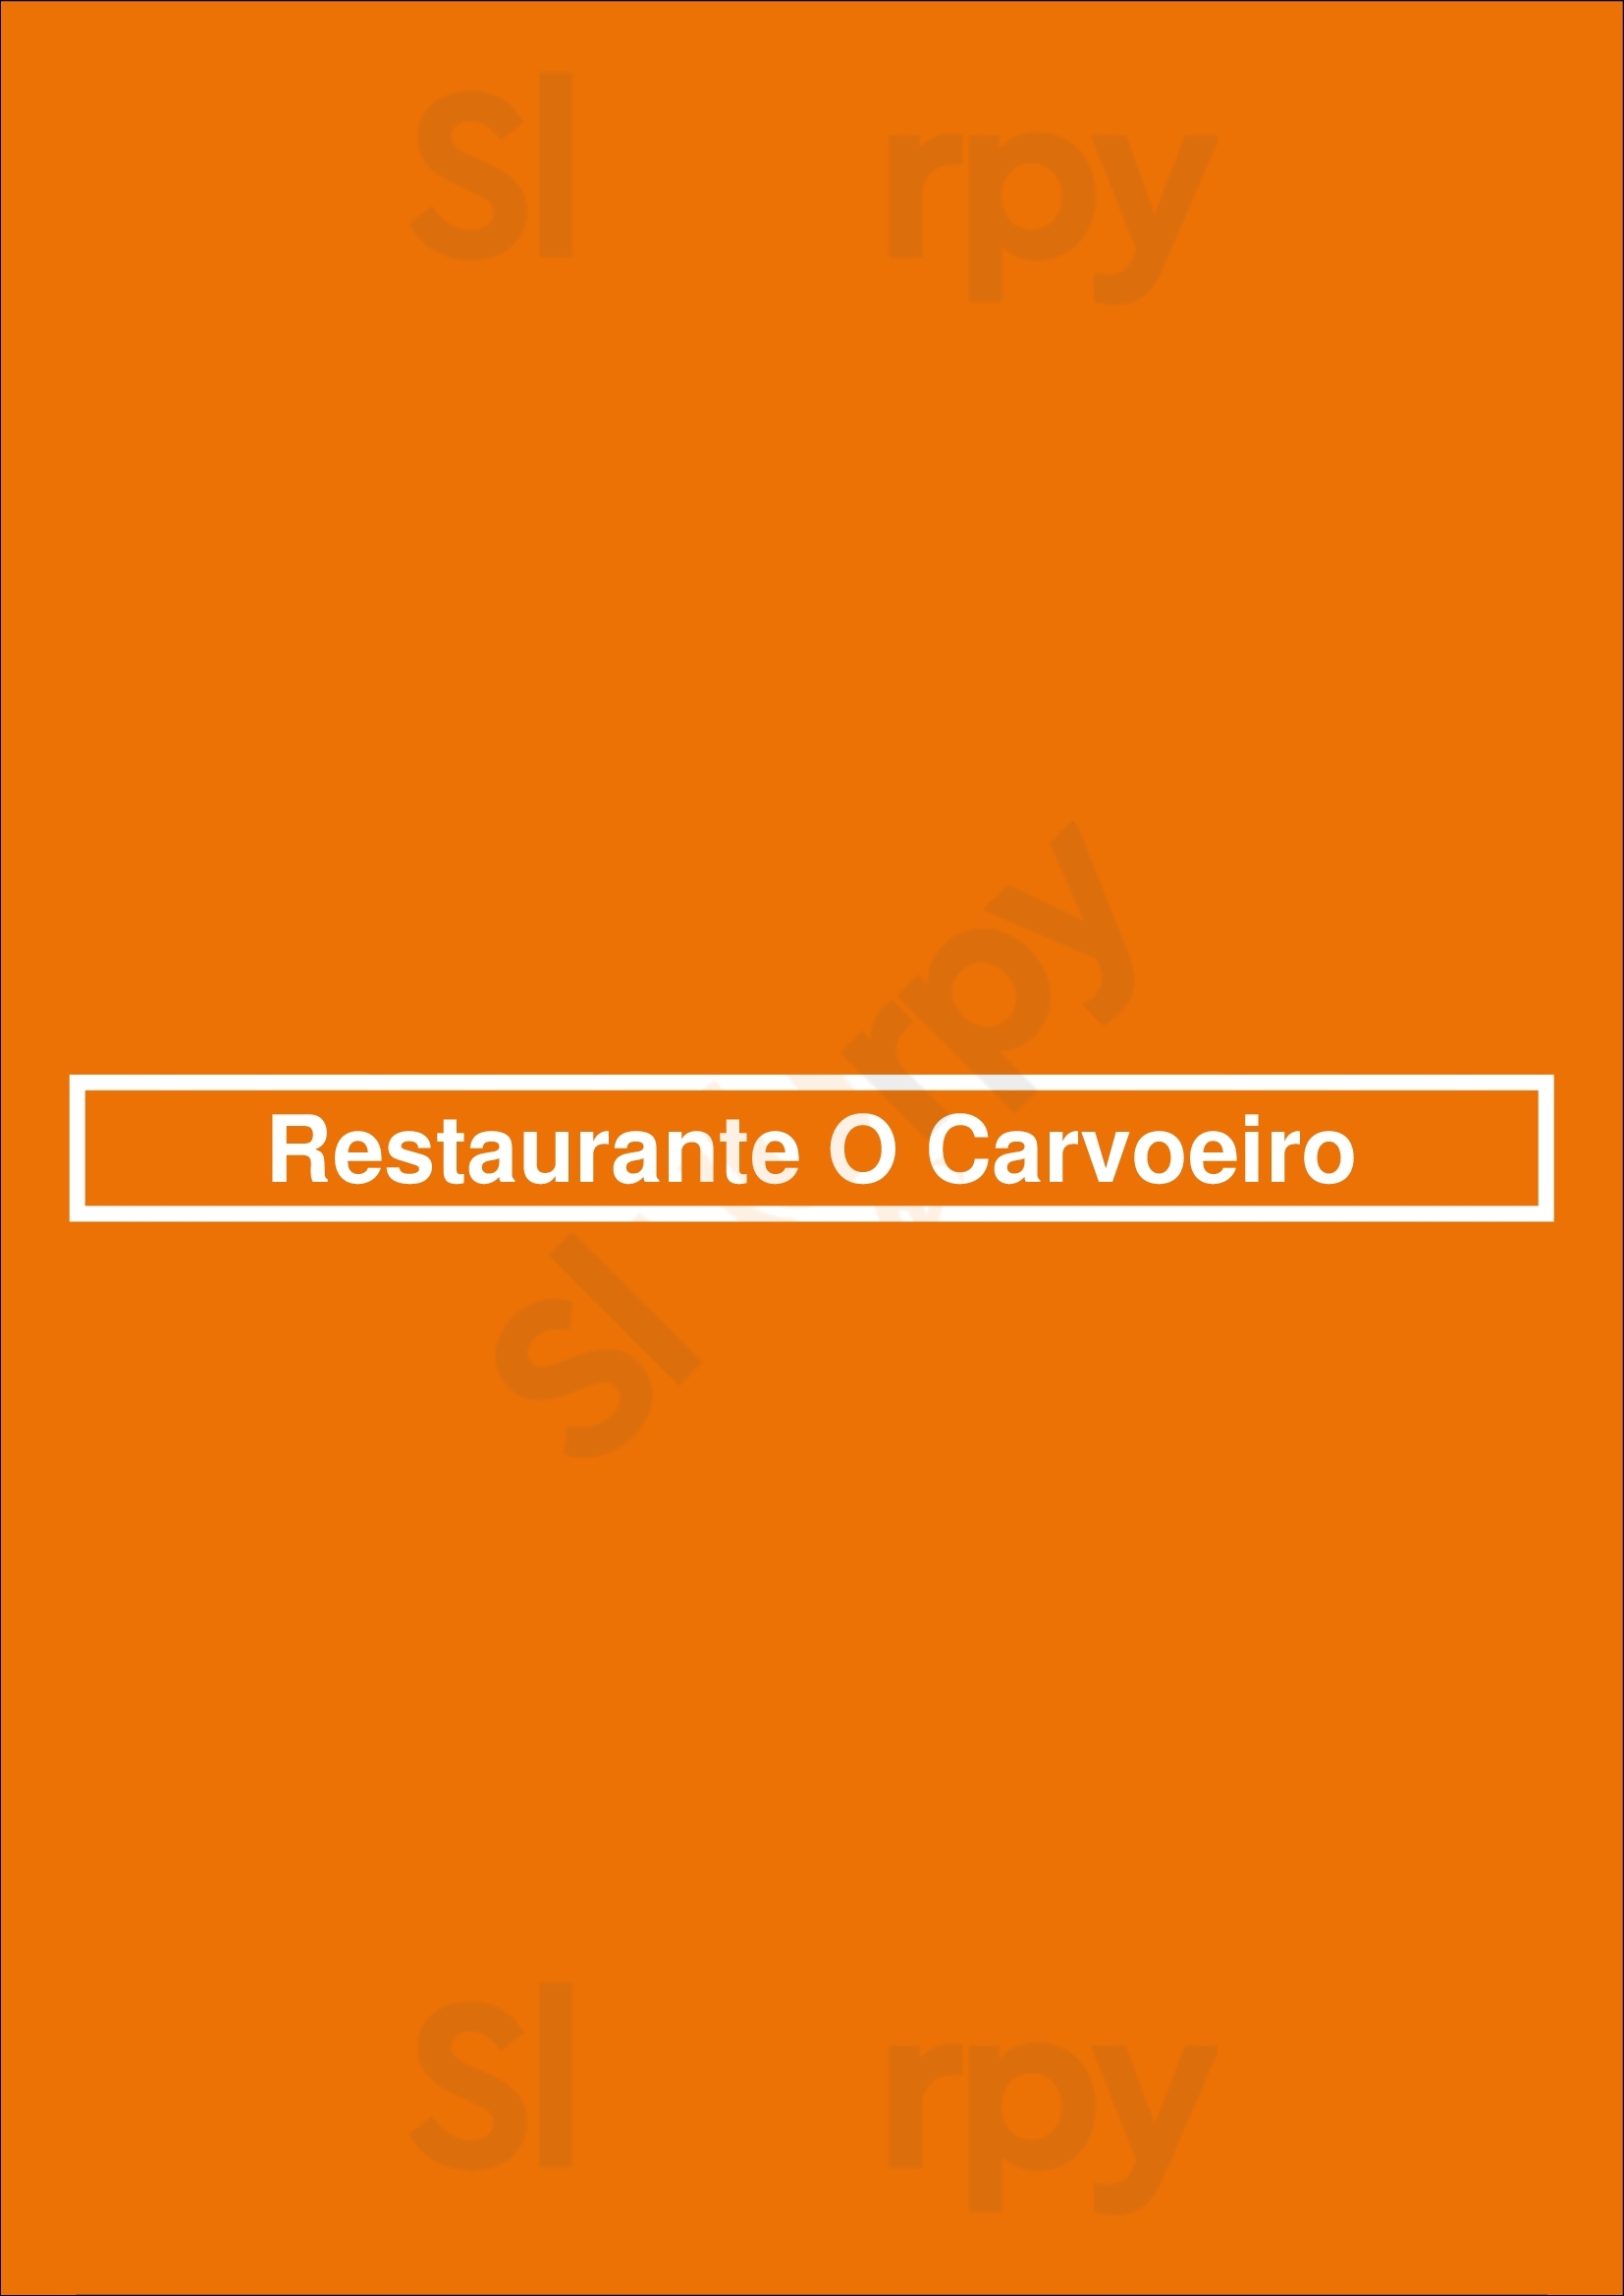 Restaurante O Carvoeiro Lisboa Menu - 1